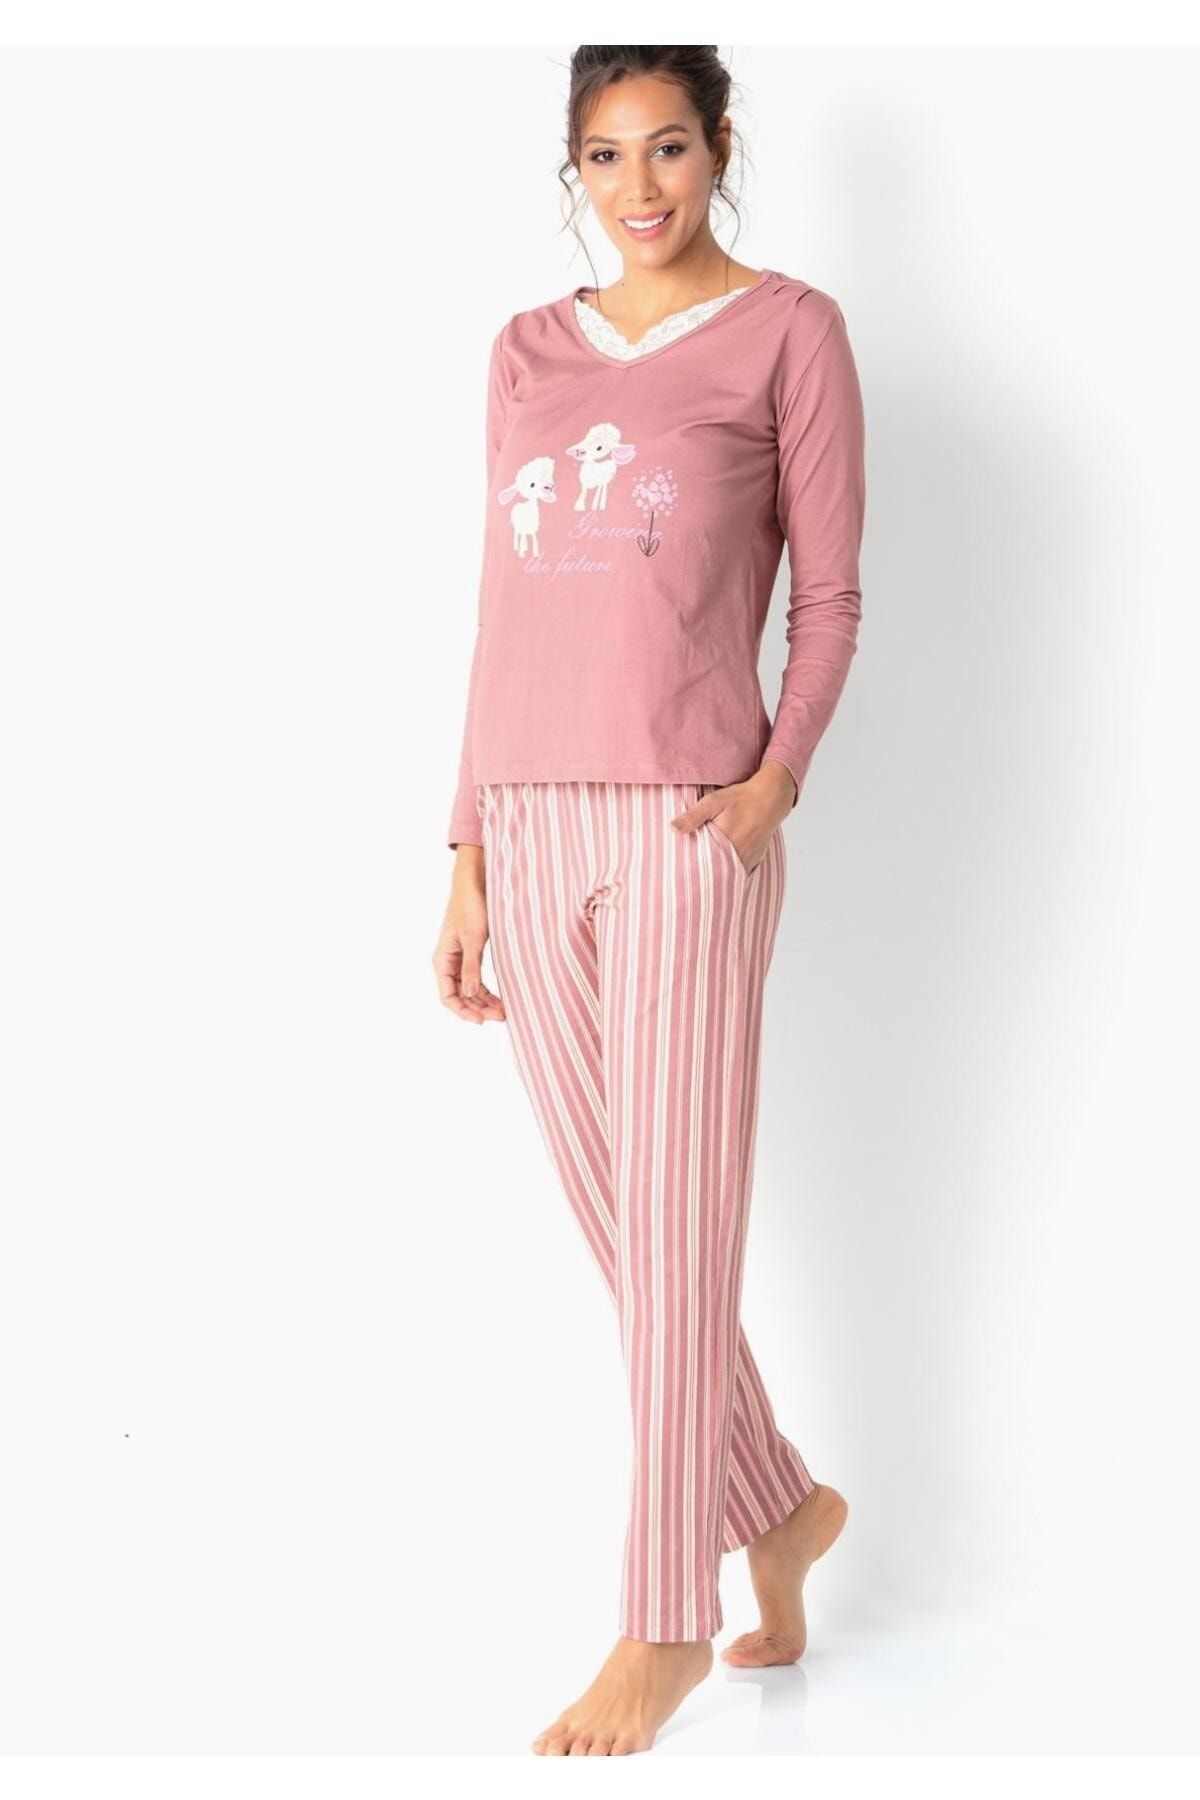 DoReMi Kadın Pijama Takımı Yeni Sezon